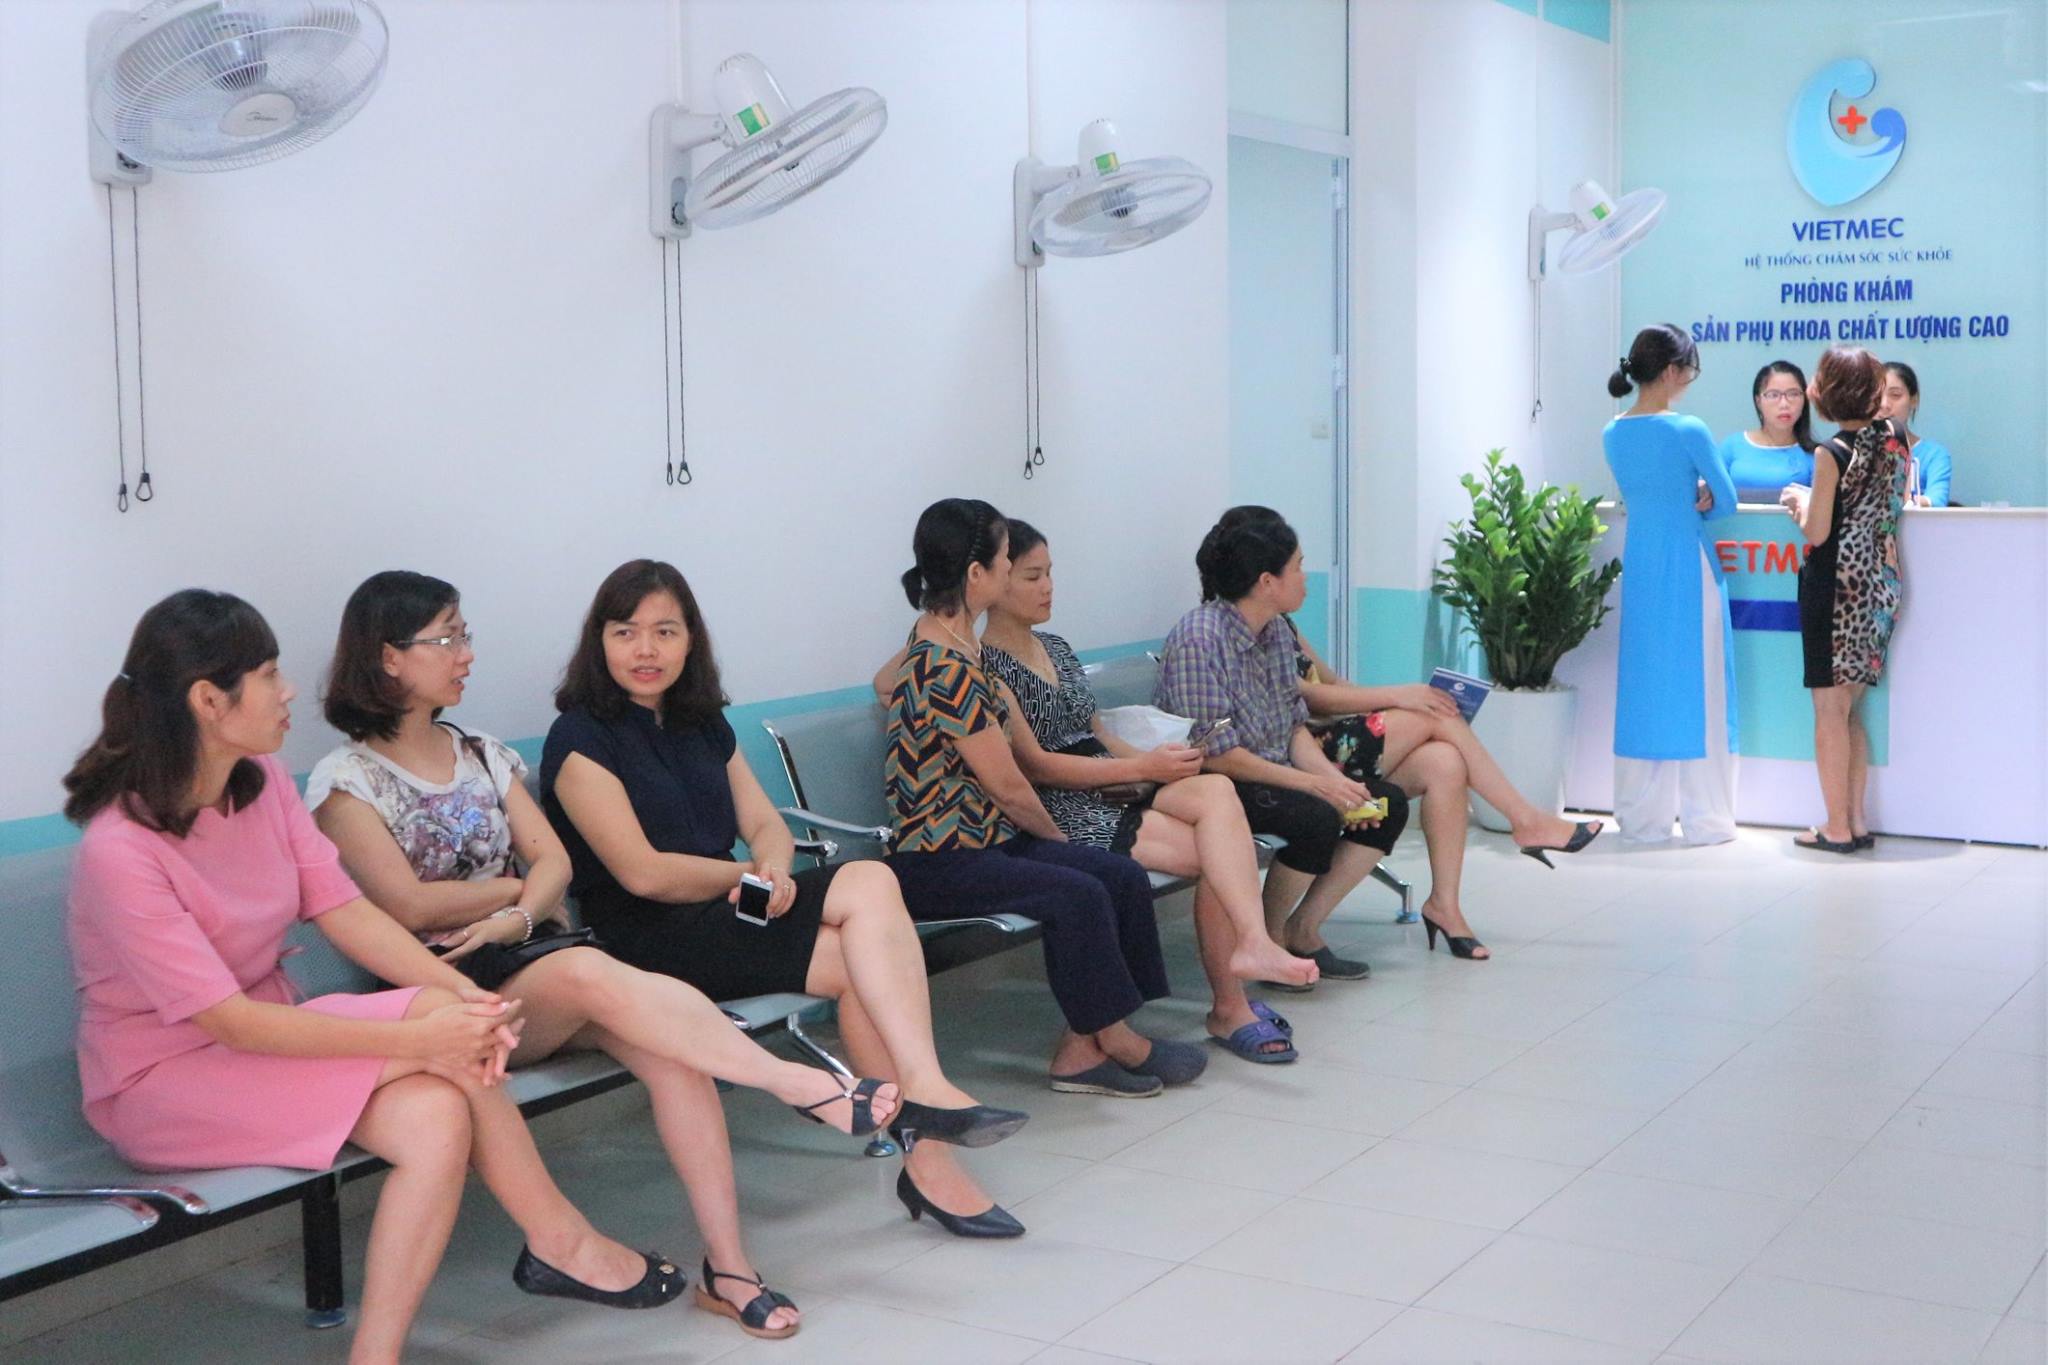 Phòng khám sản phụ khoa Vietmec là địa chỉ tin cậy để chị em cấy que tránh thai